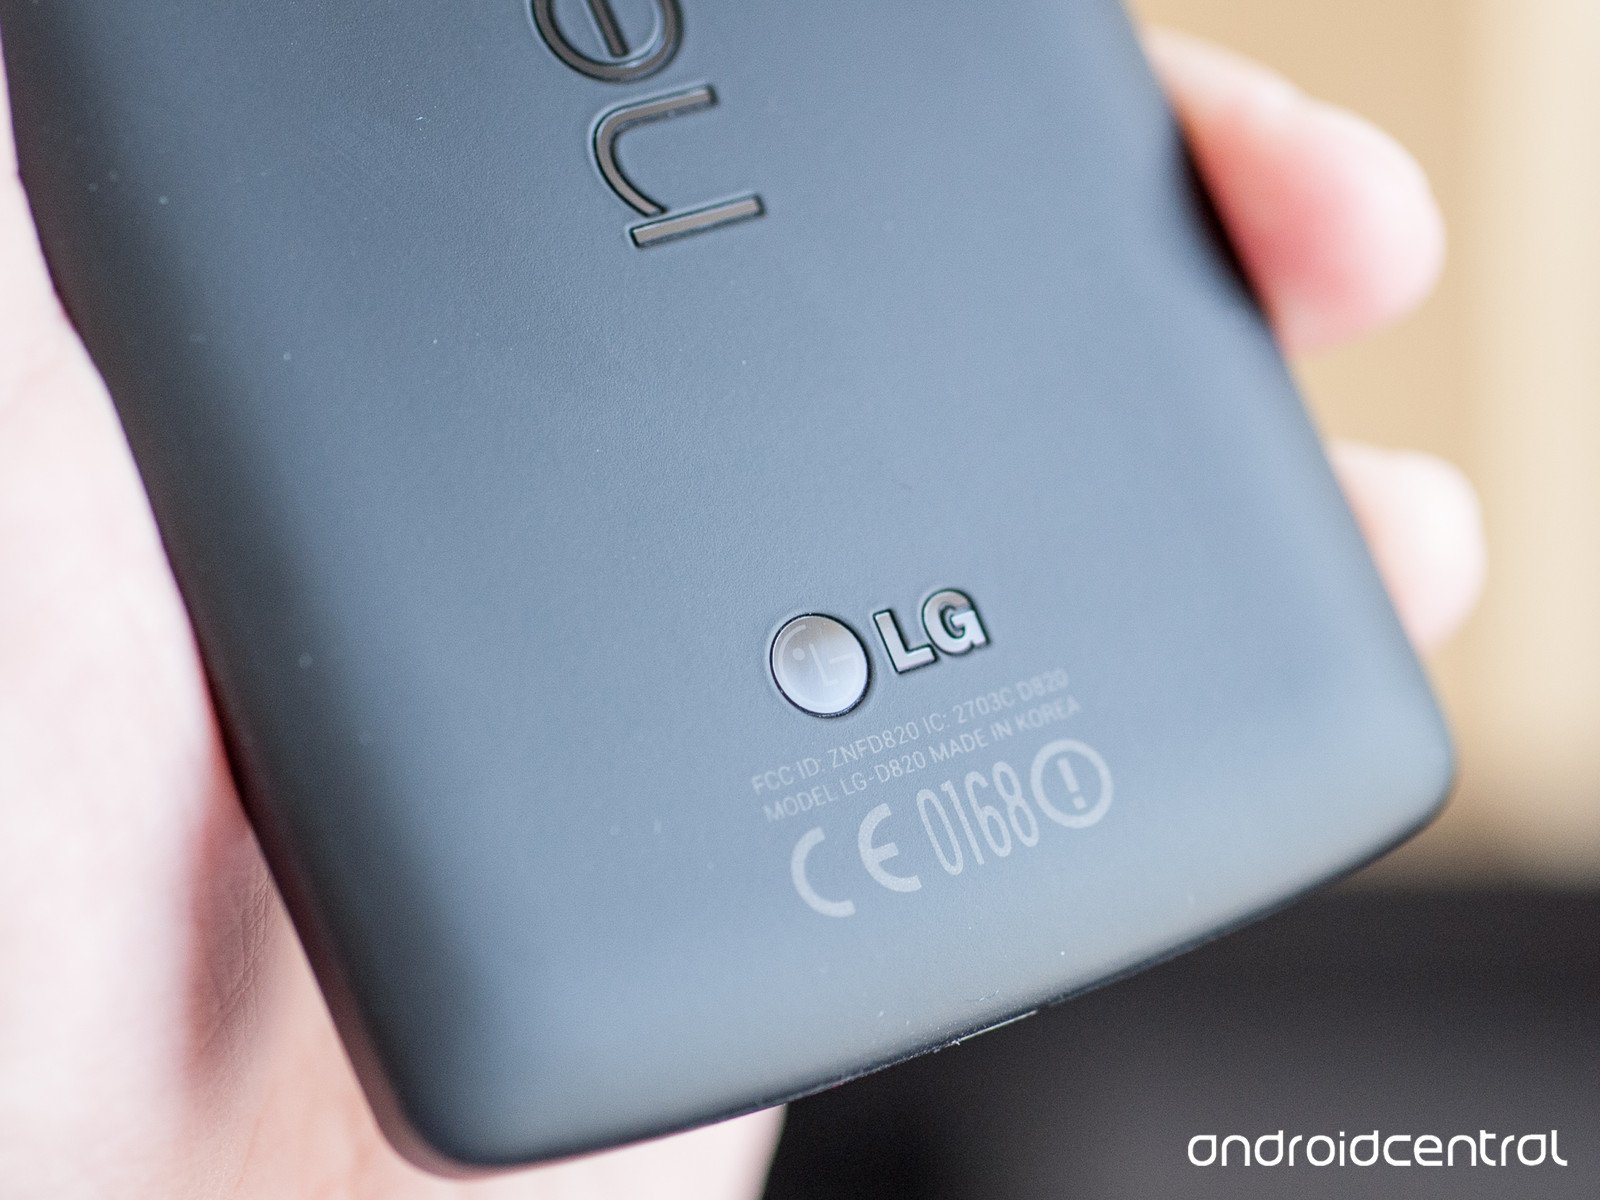  เว็บไซต์ Android Police อ้างว่าได้ข้อมูลสเปกของ Nexus 5 รุ่นปี 2015 ที่ผลิตโดย LG ดังนี้ หน้าจอขนาด 5.2